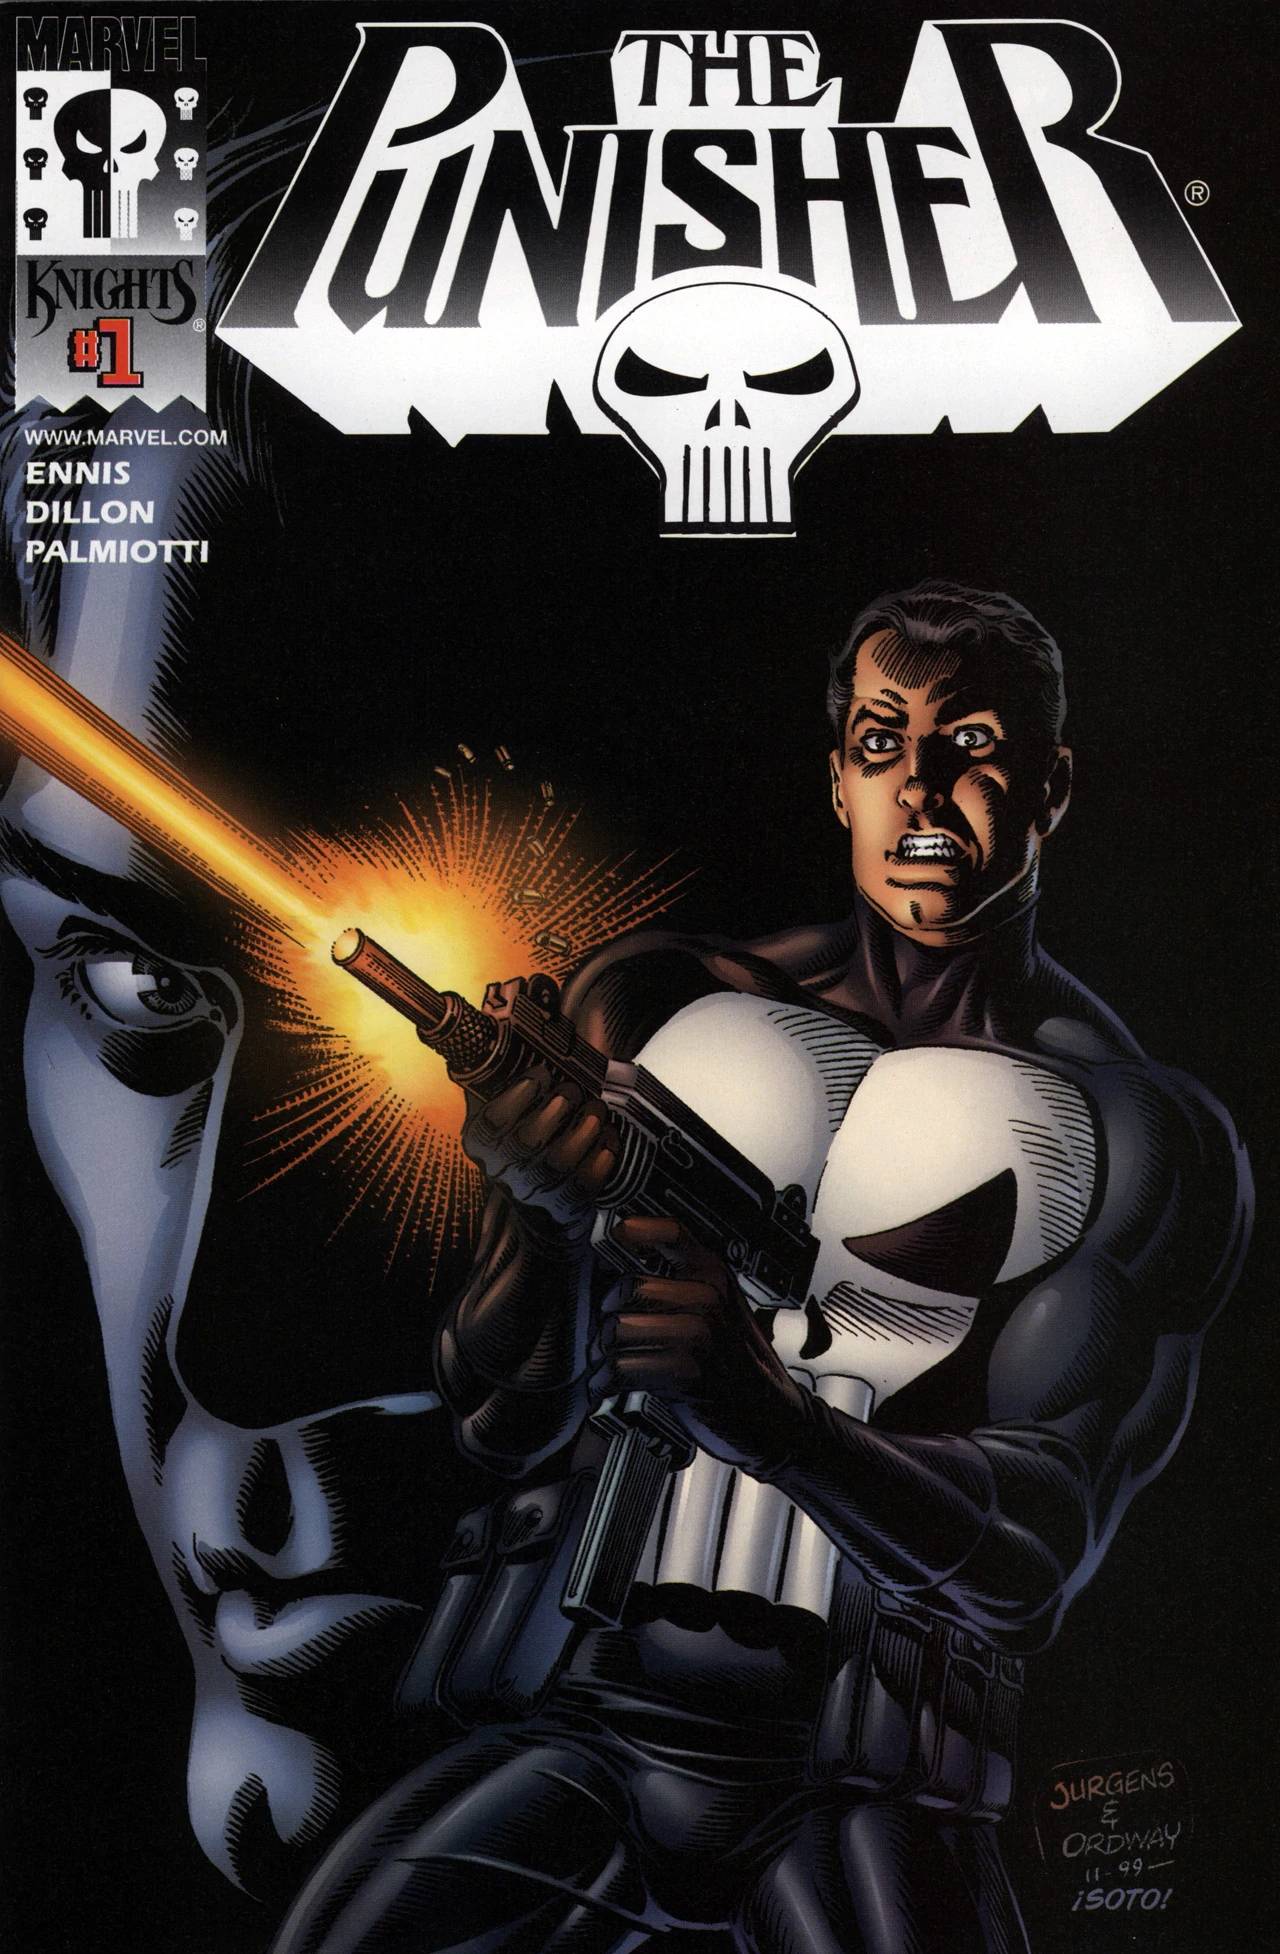 Arion's Archaic Art: The Punisher # 9-12 (2000) - Garth Ennis & Steve Dillon